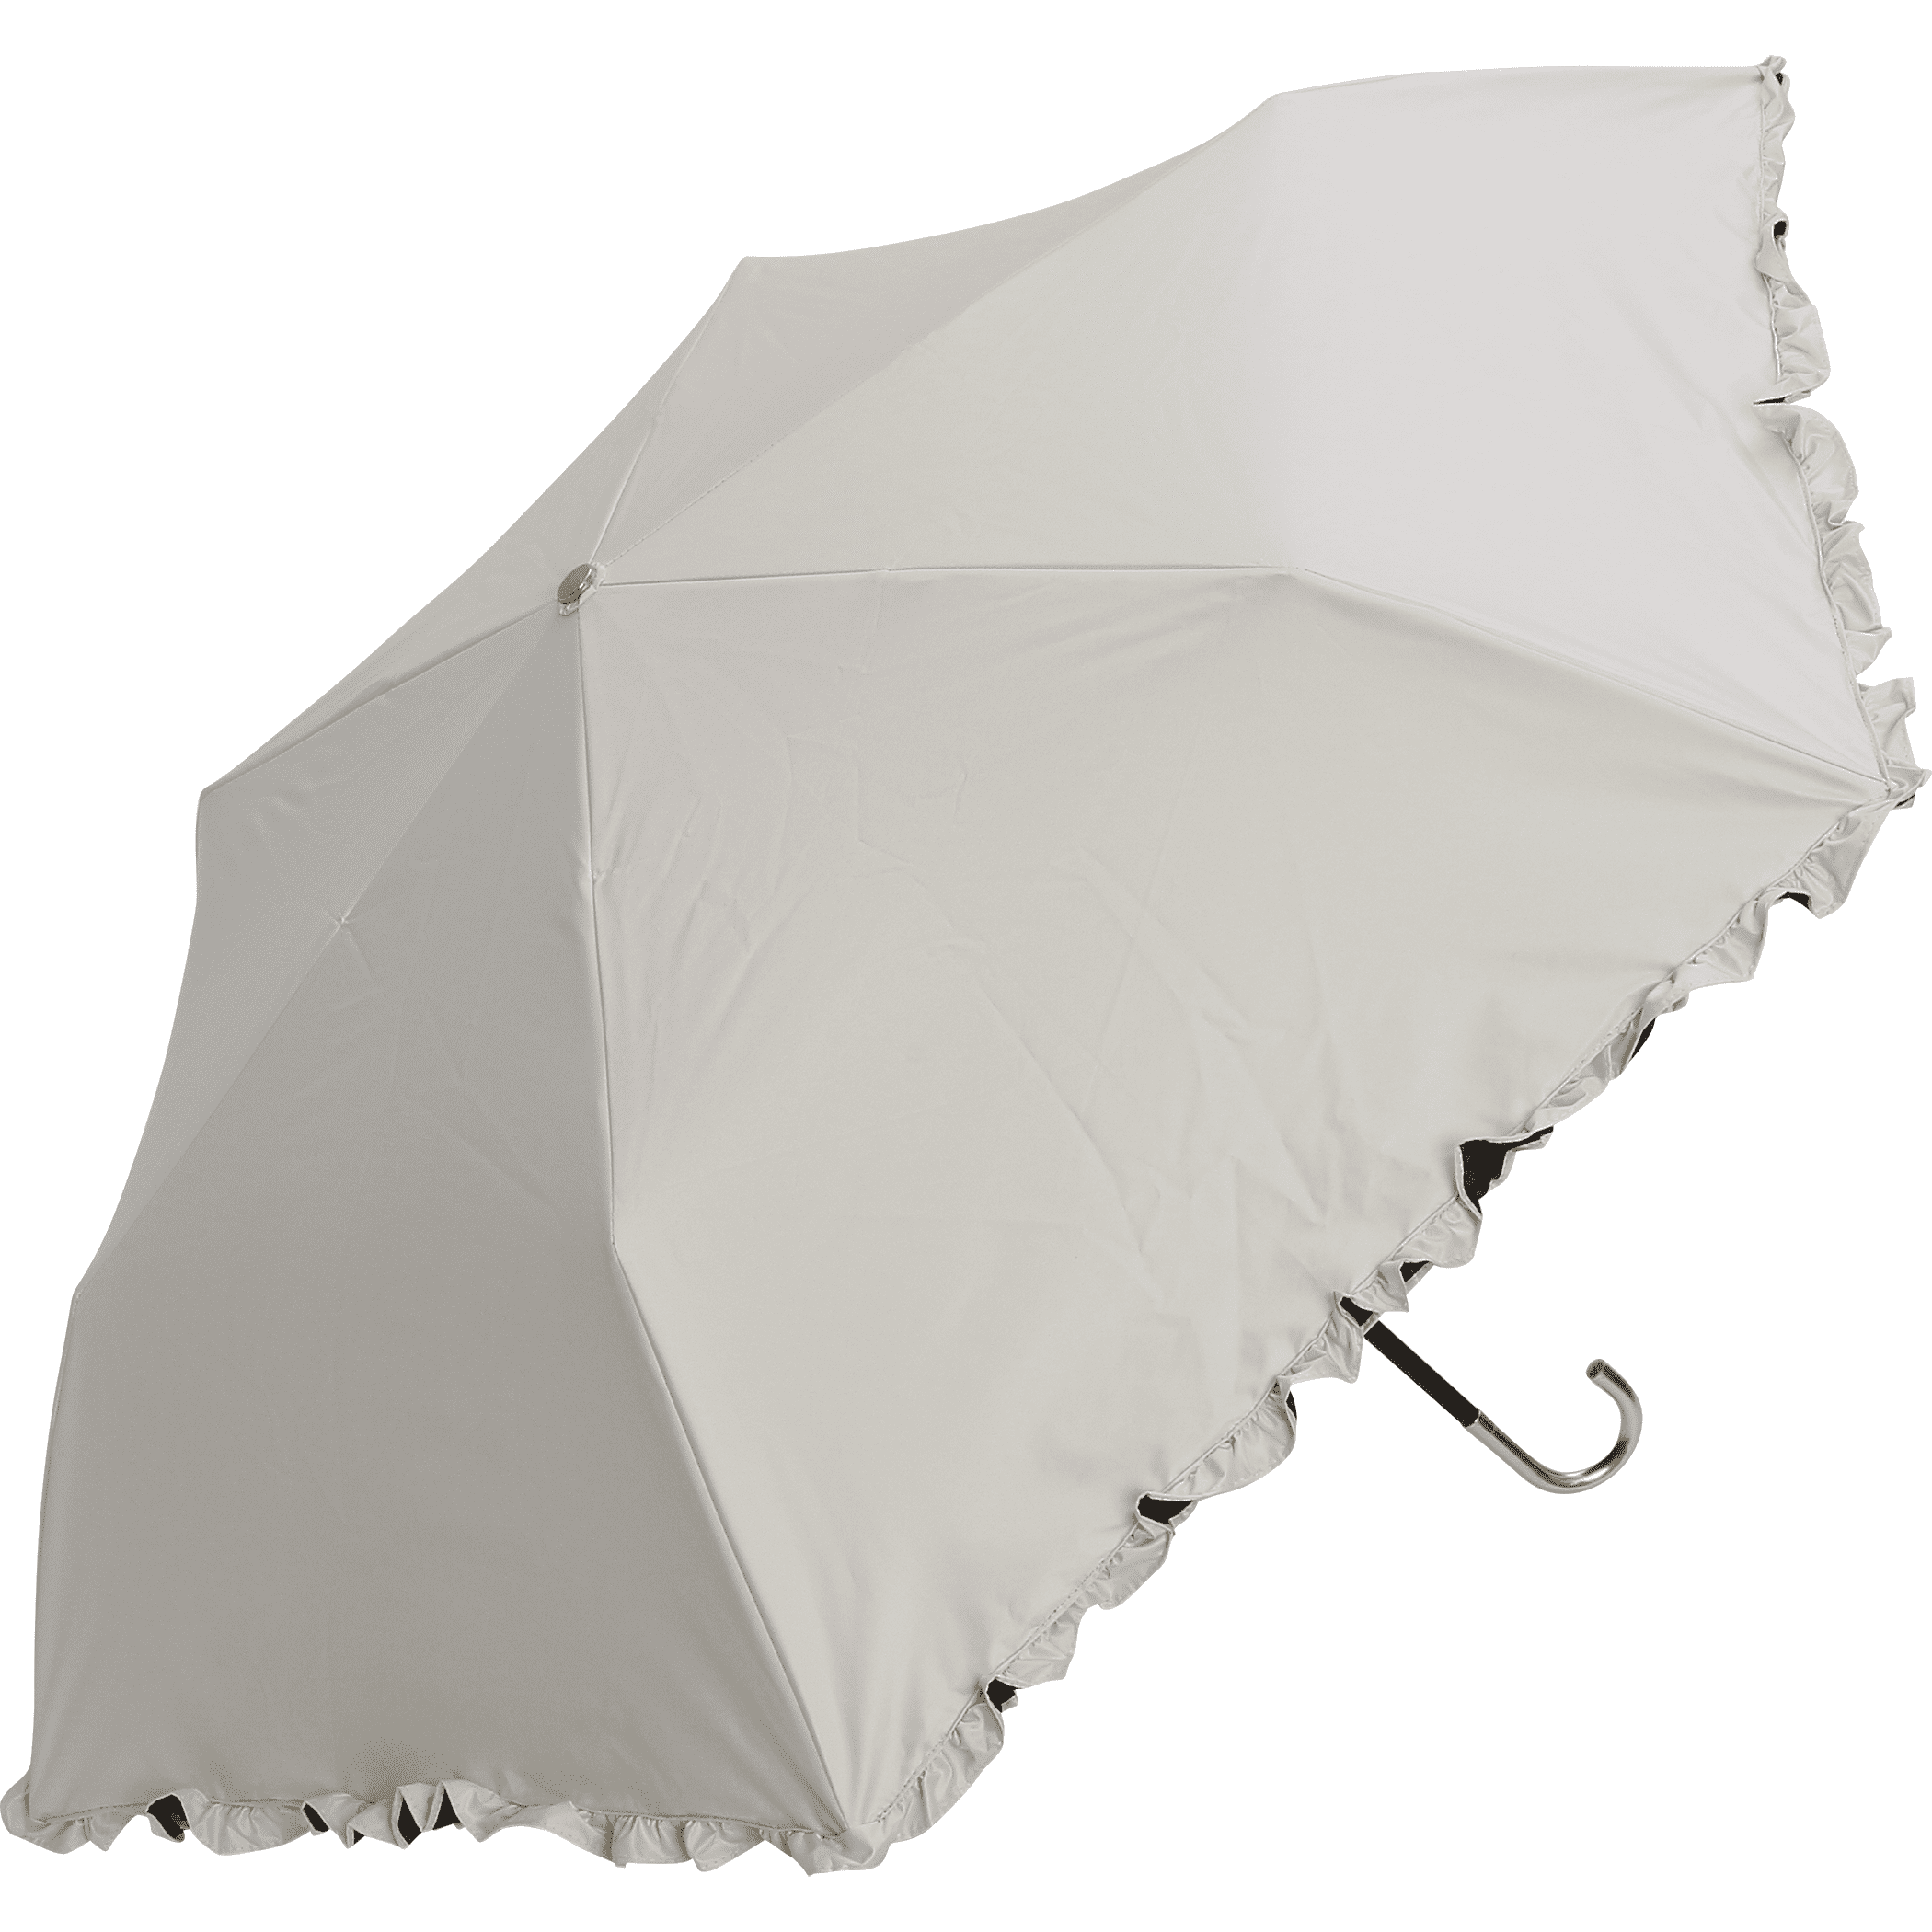 日傘 折りたたみ傘 完全遮光 軽量 レディース 傘 遮光 遮熱 紫外線遮蔽 手開き レース フリル 折り畳み uvカット 50cm a.s.s.a